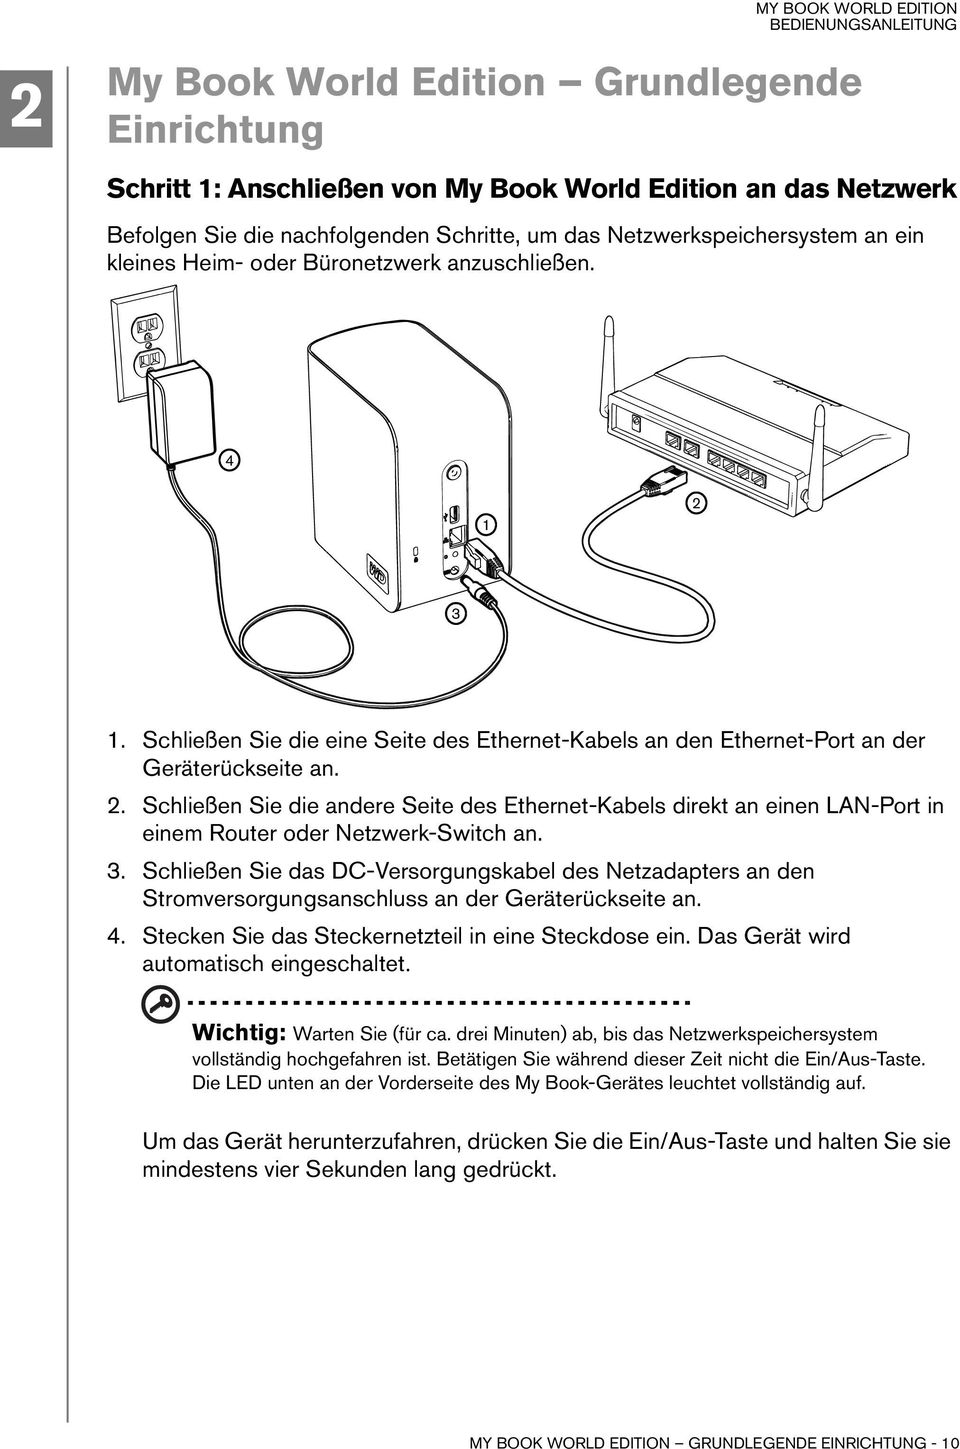 3. Schließen Sie das DC-Versorgungskabel des Netzadapters an den Stromversorgungsanschluss an der Geräterückseite an. 4. Stecken Sie das Steckernetzteil in eine Steckdose ein.